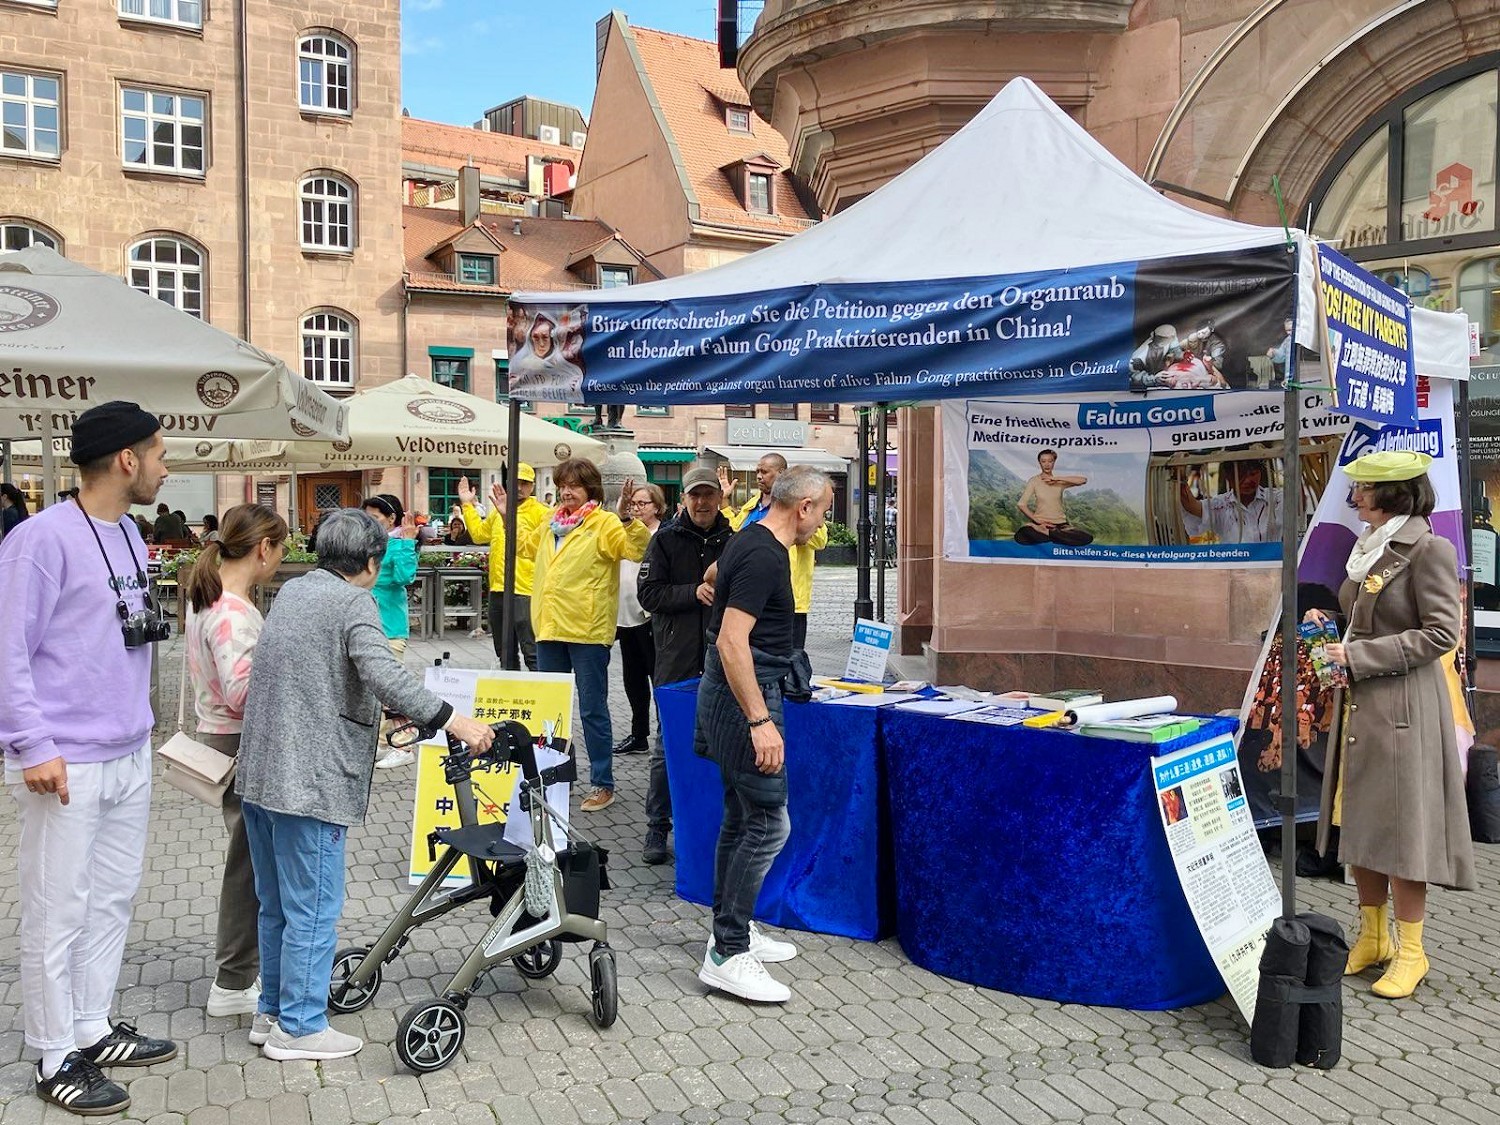 Image for article Allemagne : Les médias et le public soutiennent les efforts d’un pratiquant de Falun Dafa pour secourir sa famille persécutée en Chine